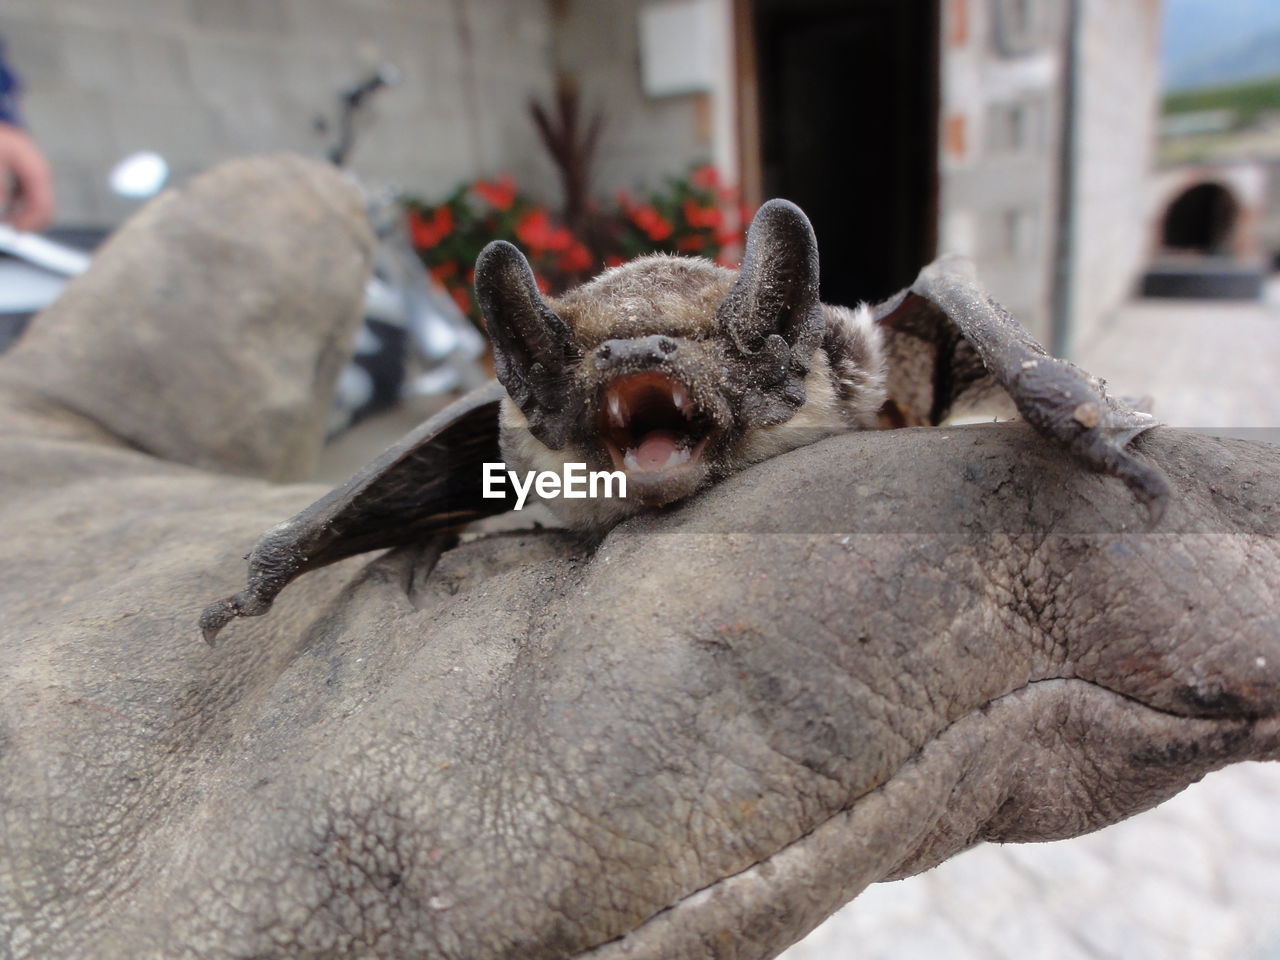 Close-up of a bat